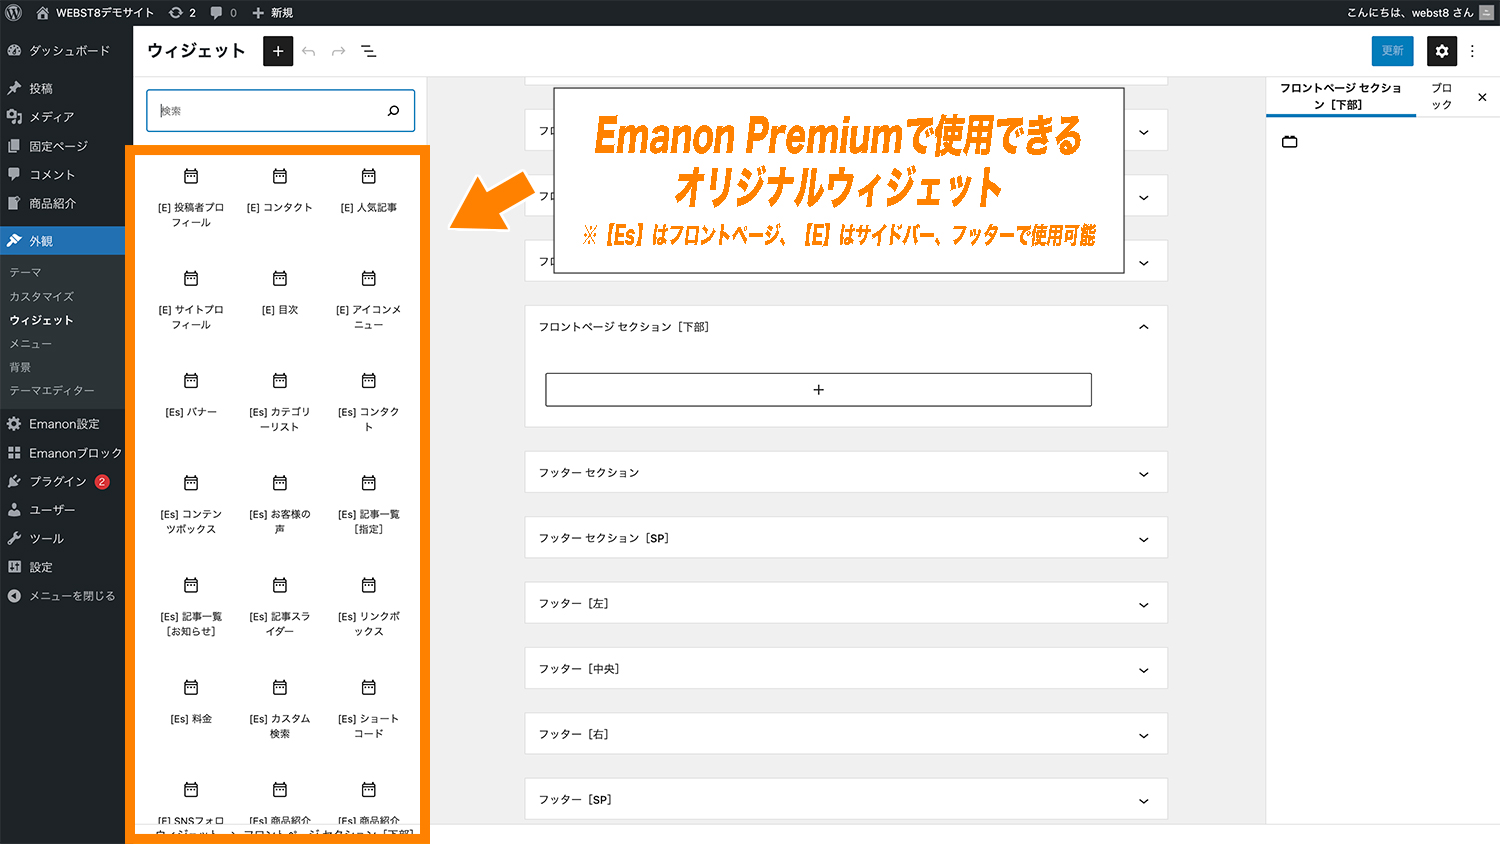 Emanon Premiumで使用できるオリジナルウィジェットの種類